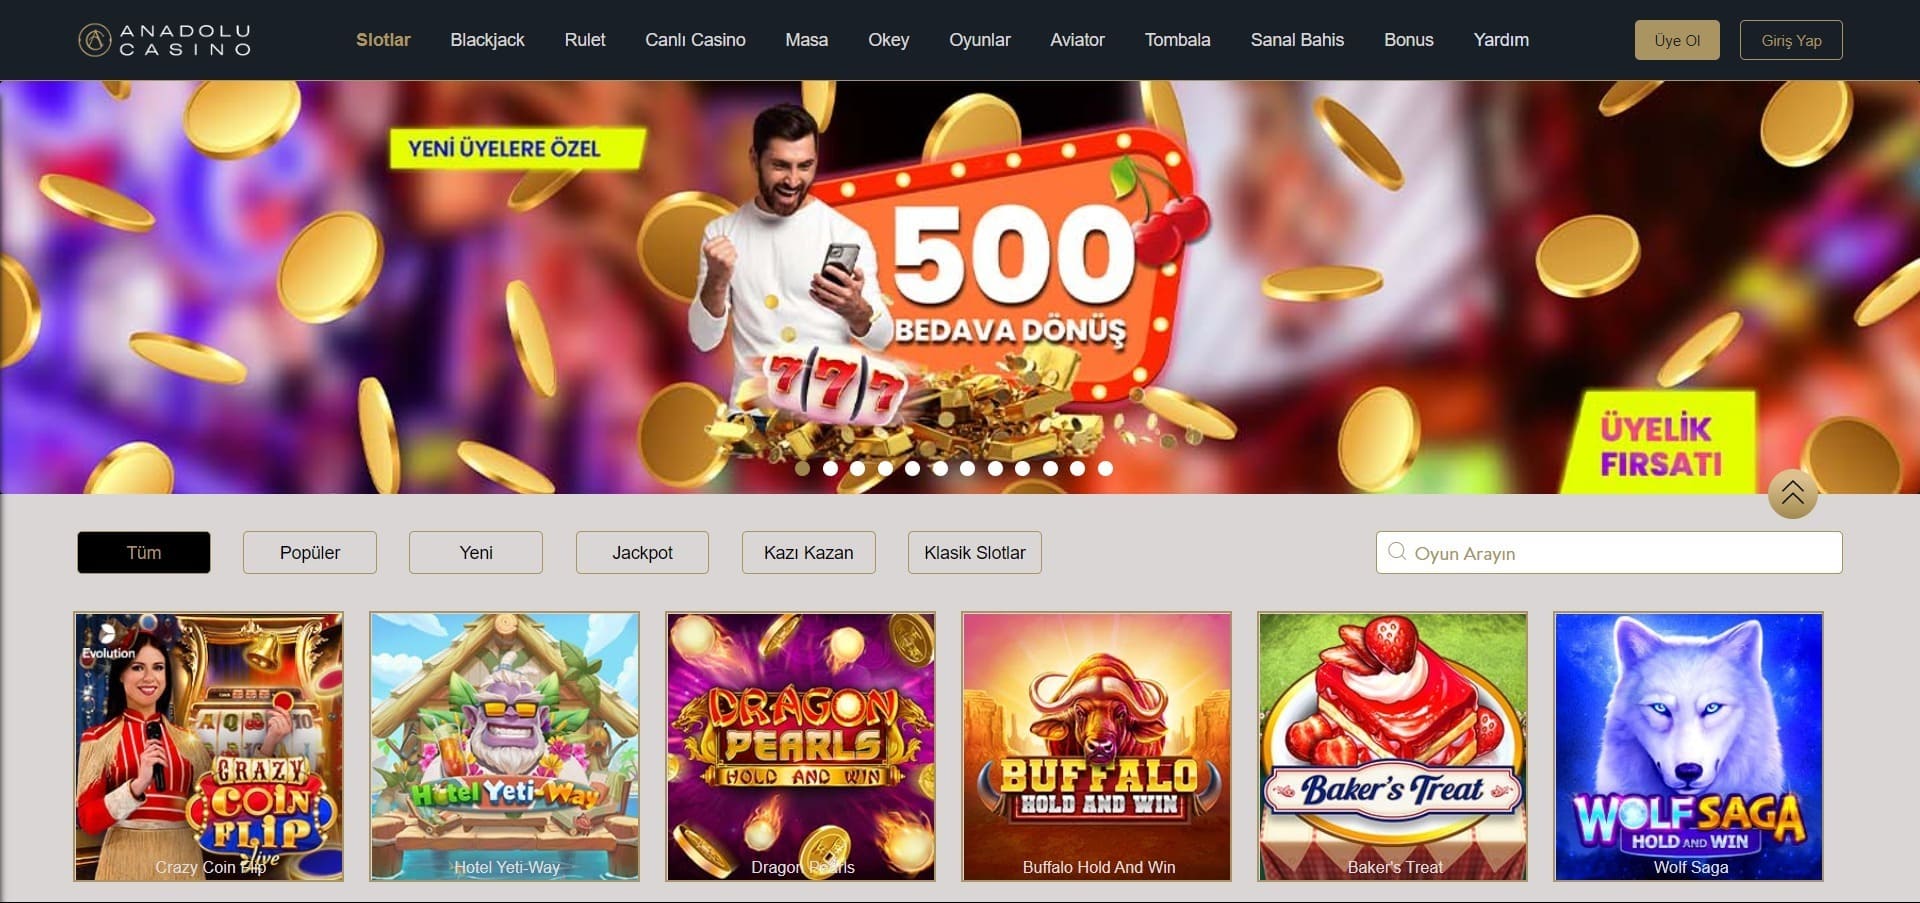 Anadolu Casino'nun resmi web sitesi